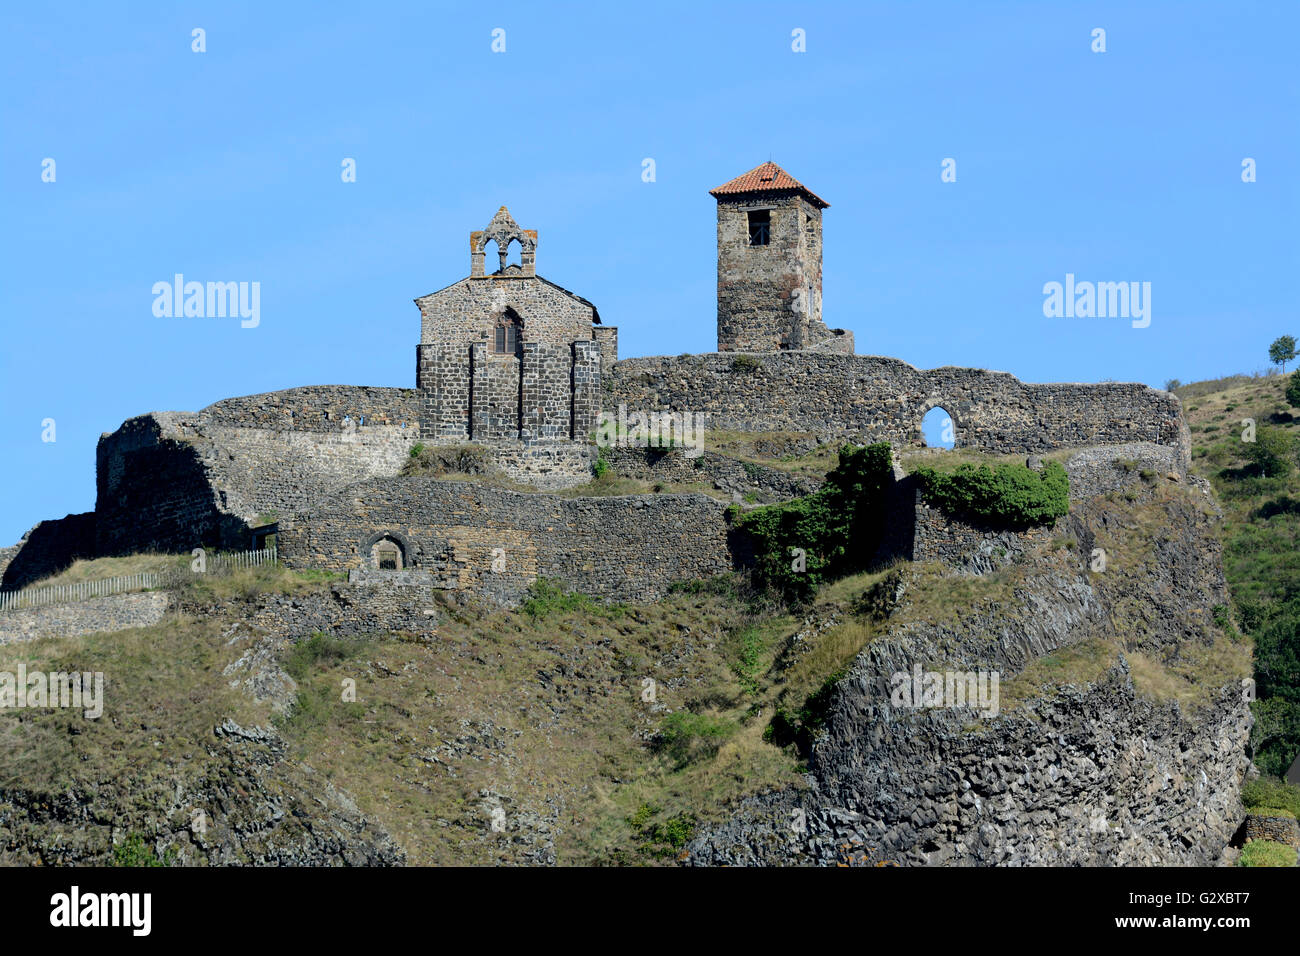 Saint Ilpize castle and the chapel, Saint Ilpize, Haute-Loire department, Auvergne, France Stock Photo